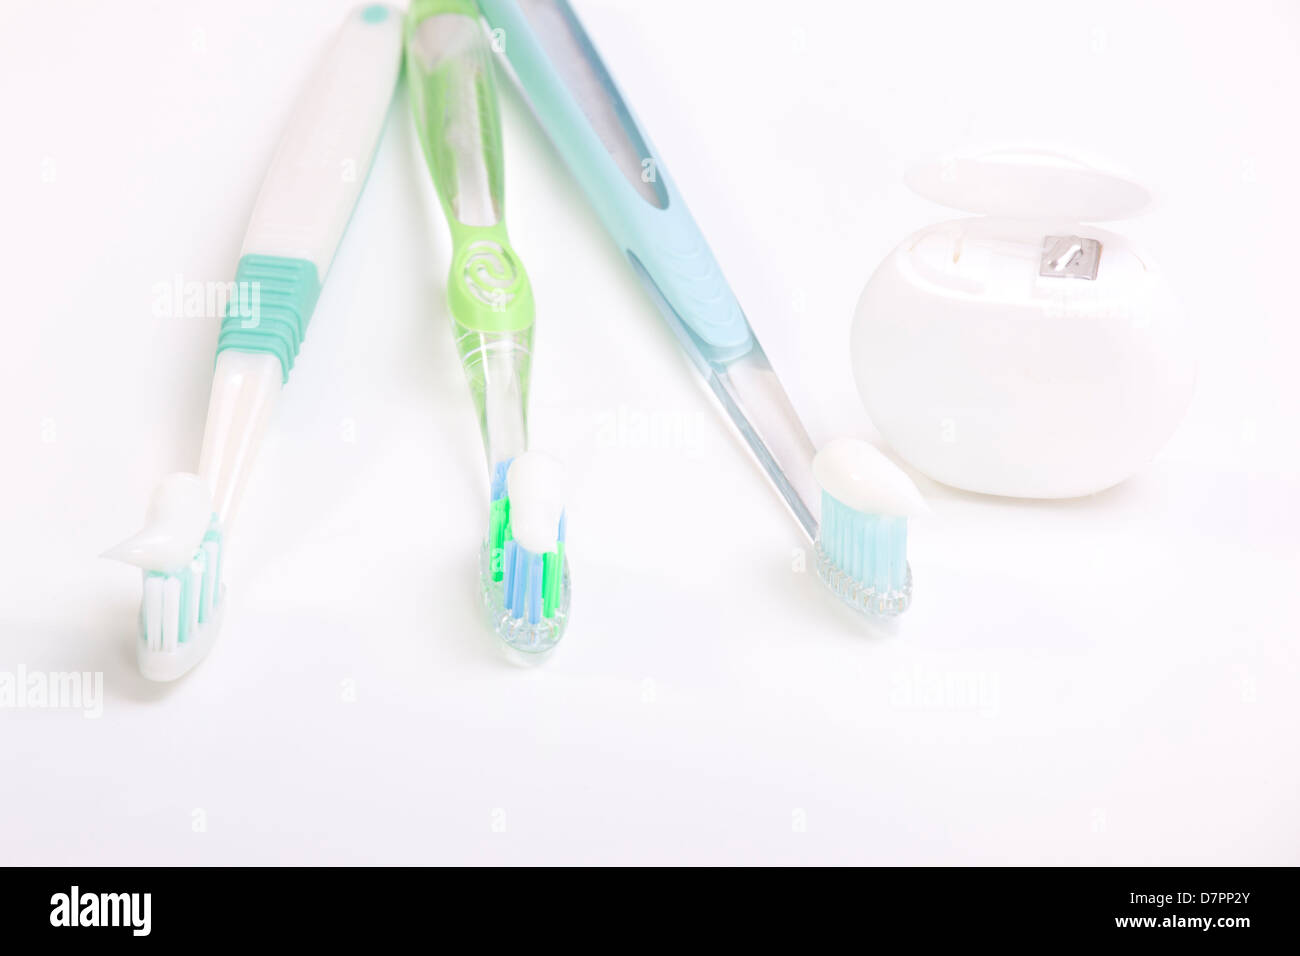 Soins de santé dentaire, brosse à dents et miroir Banque D'Images